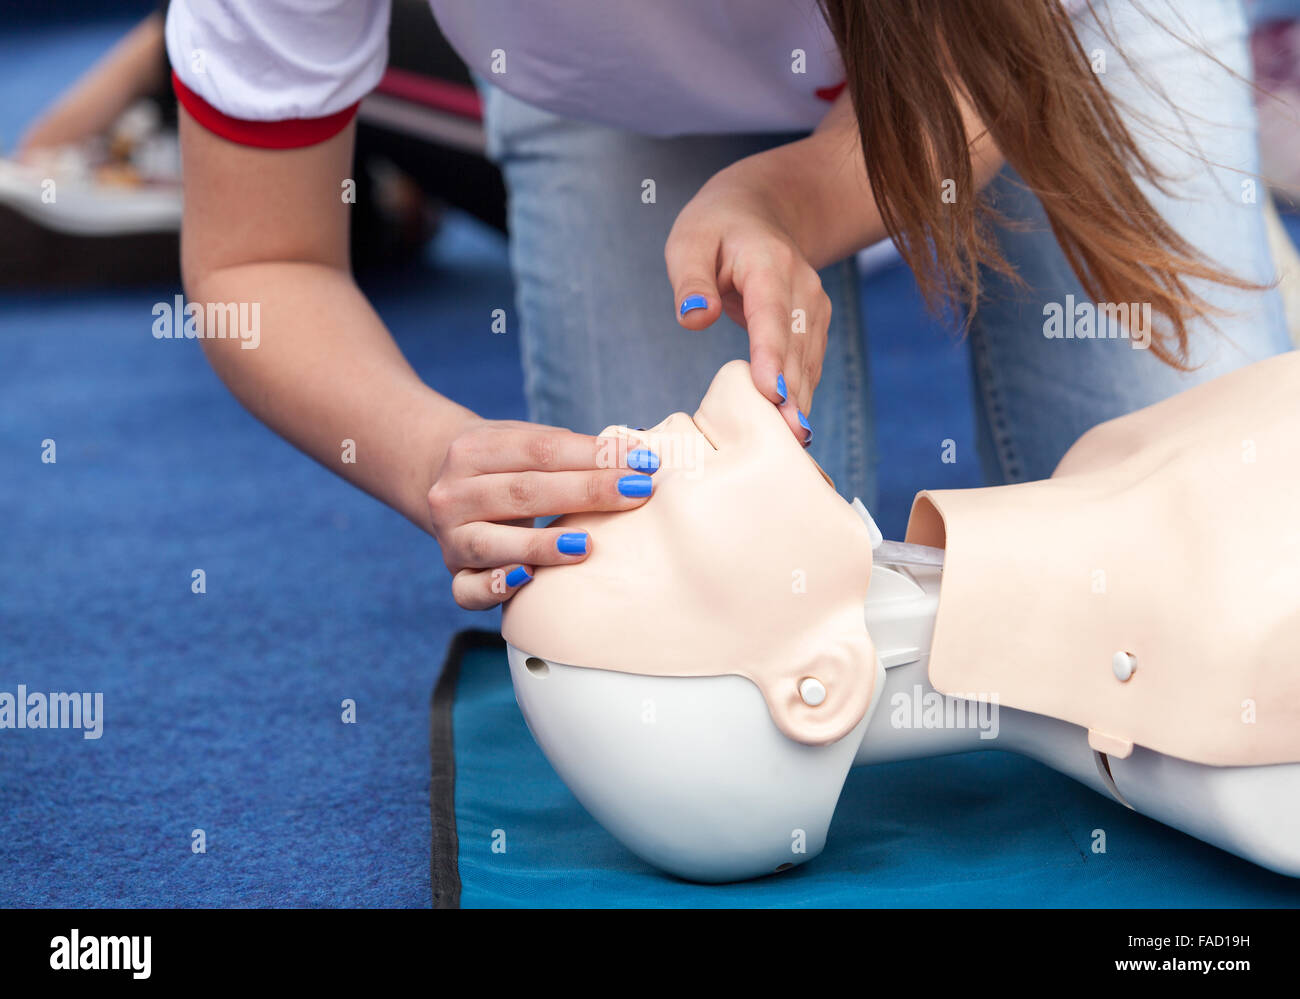 Cardiopulmonary resuscitation (CPR) training detail Stock Photo